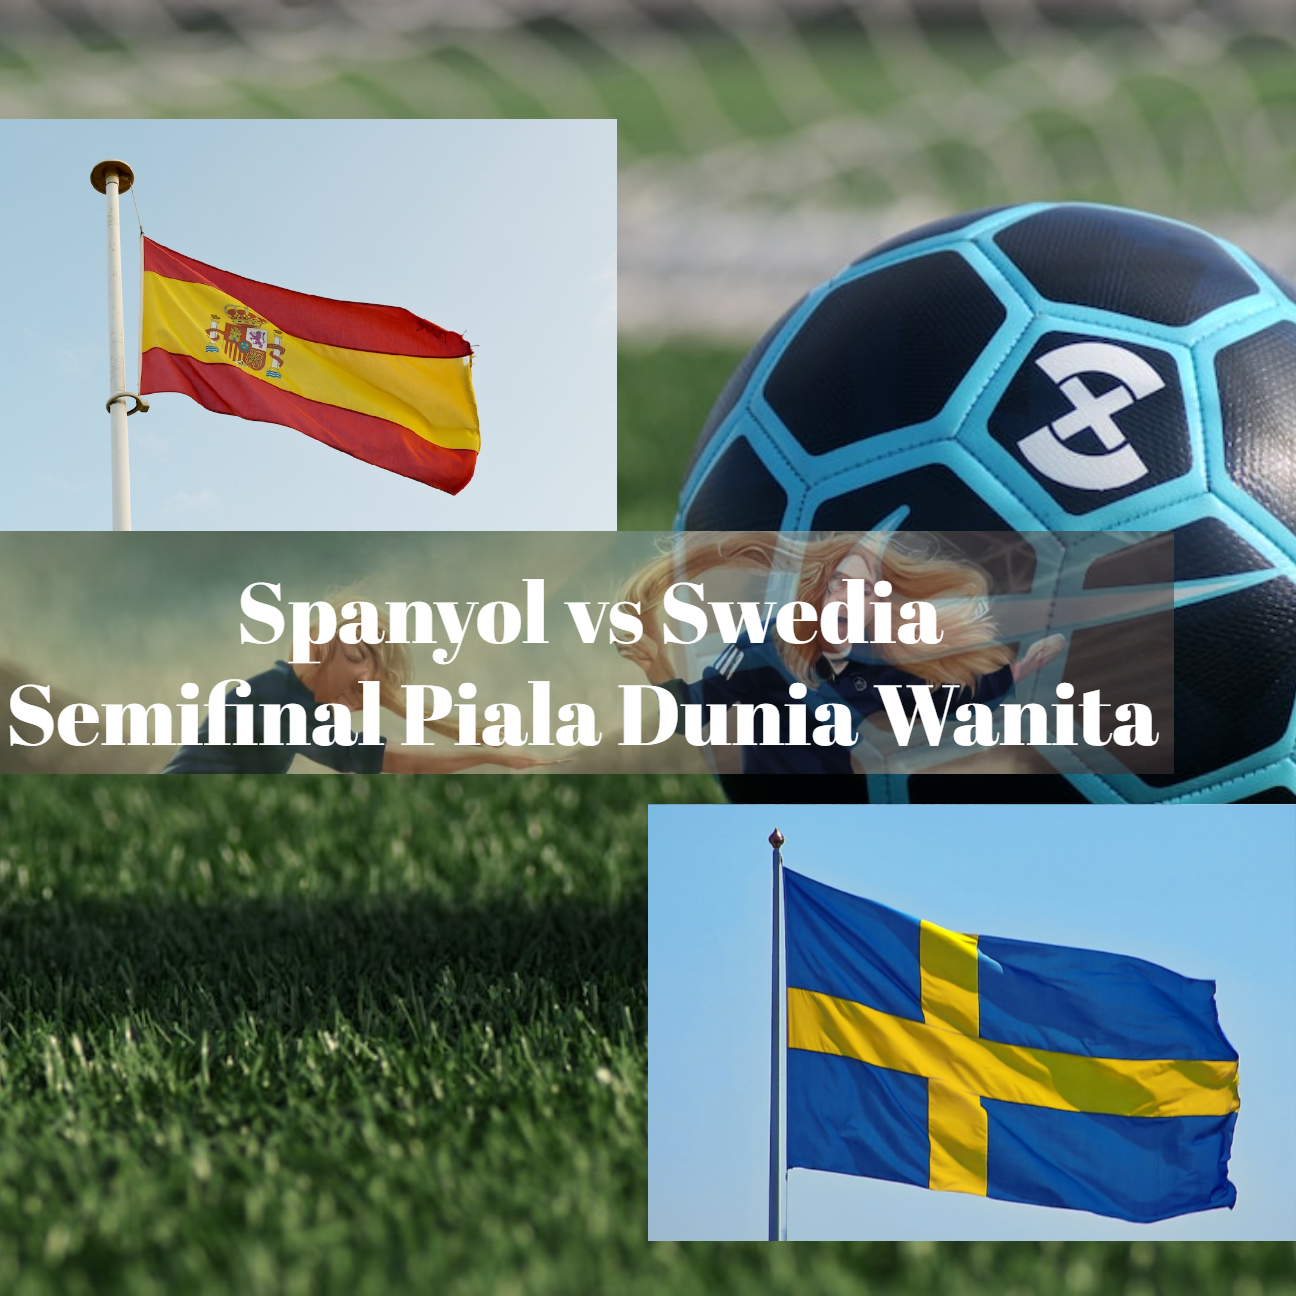 Spanyol vs Swedia di Semifinal Piala Dunia Wanita 2023